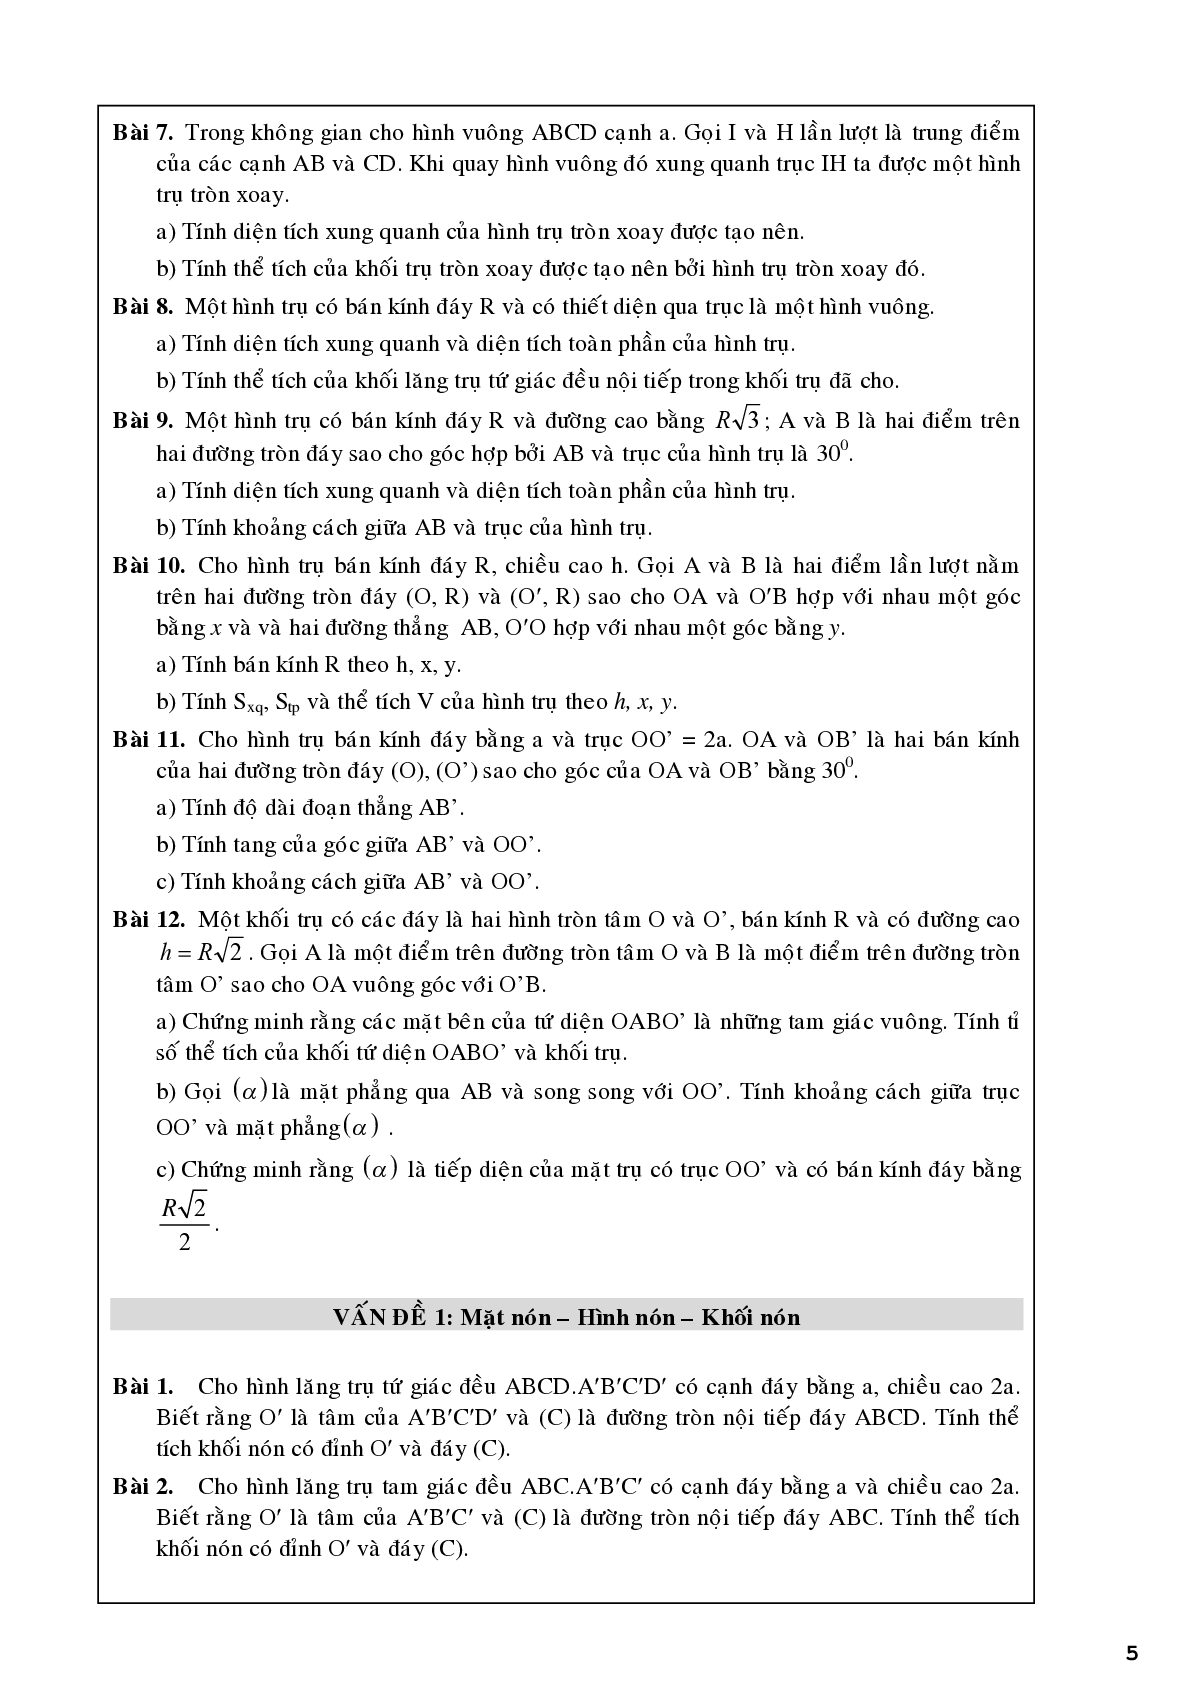 Bài tập về khối tròn xoay chọn lọc (trang 5)